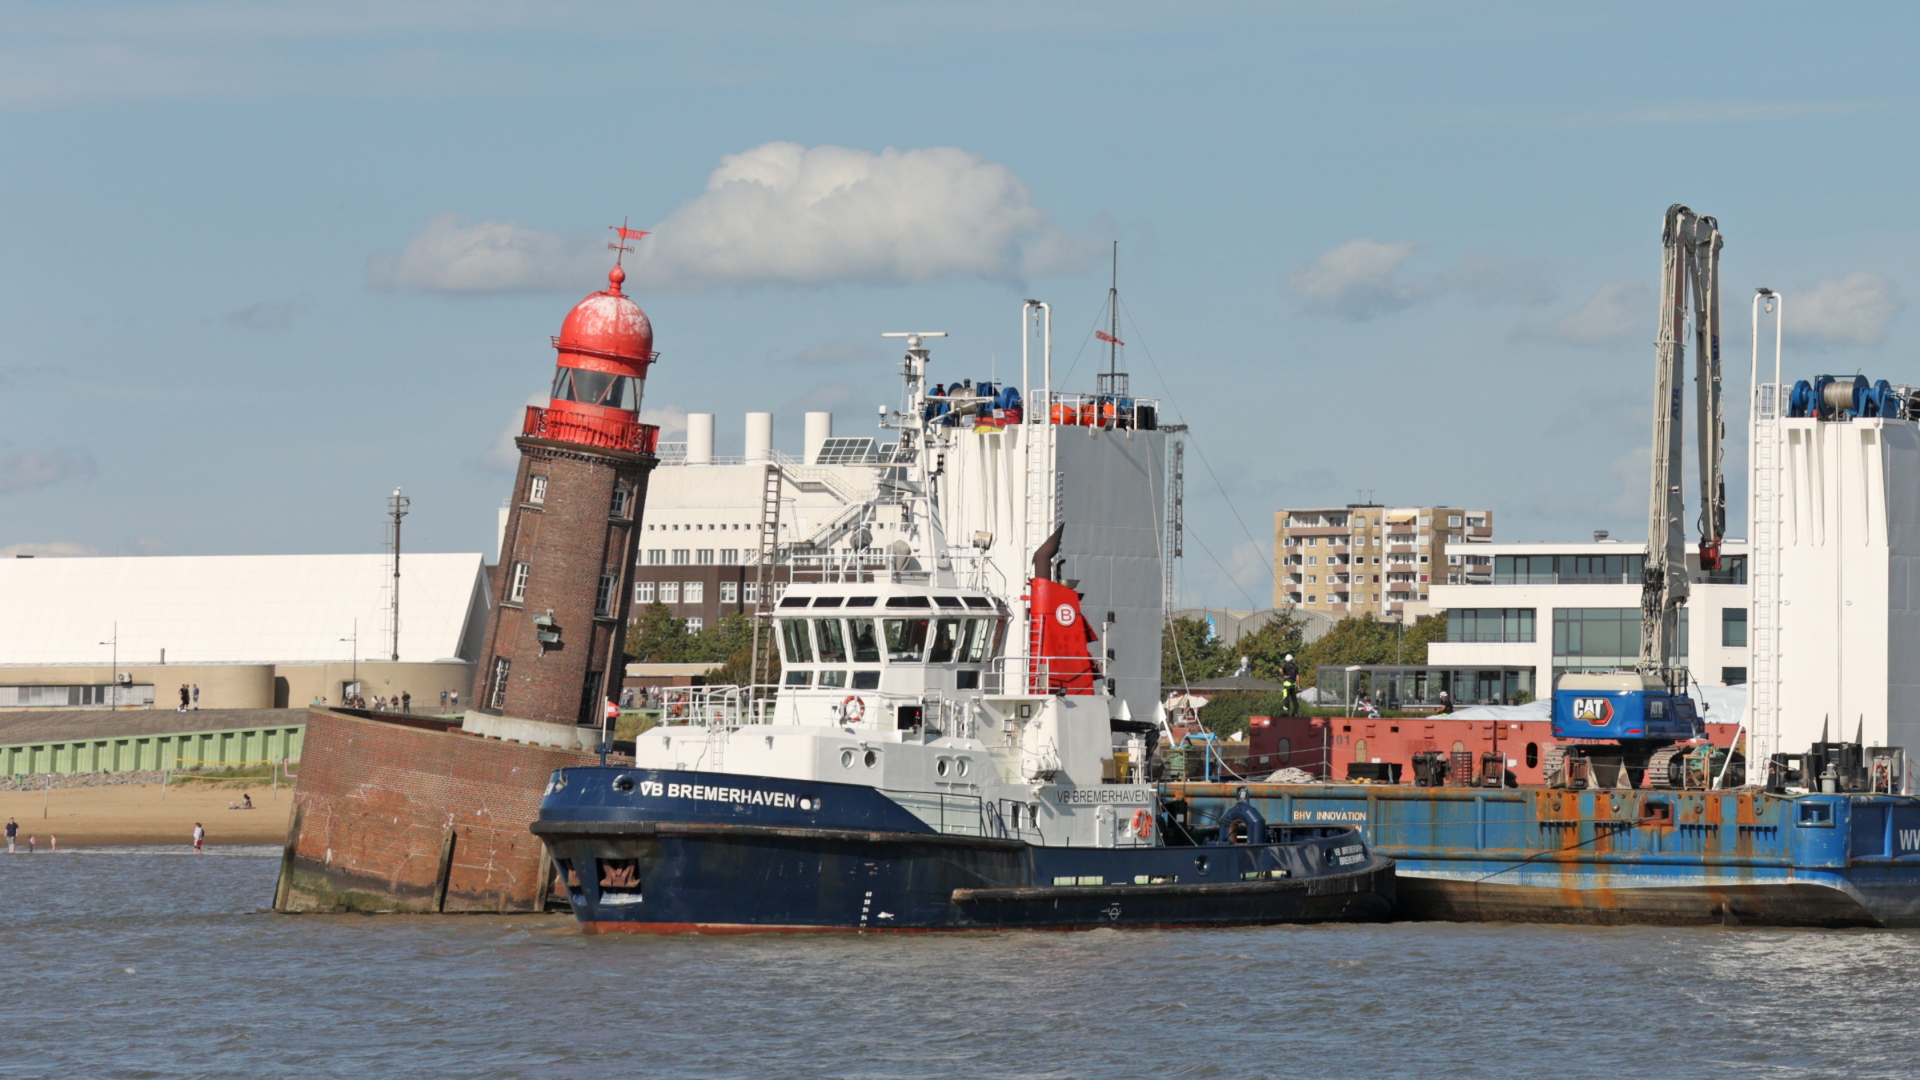 Schiff vor dem abgesackten Molenturm in Bremerhaven | dpa